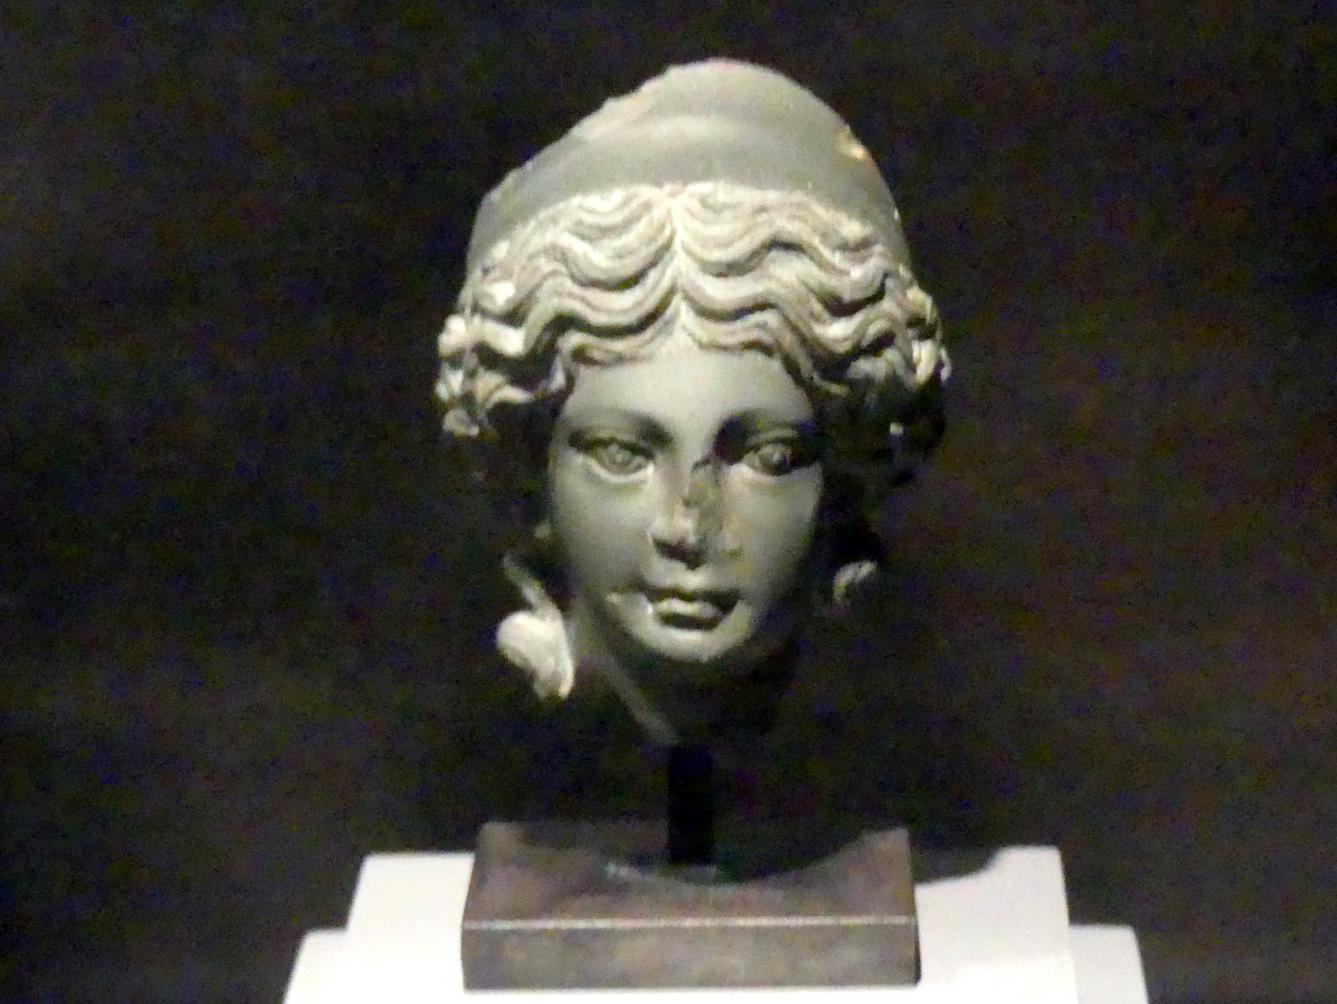 Kopf einer Statue der Göttin Isis, Römische Kaiserzeit, 27 v. Chr. - 54 n. Chr., 200